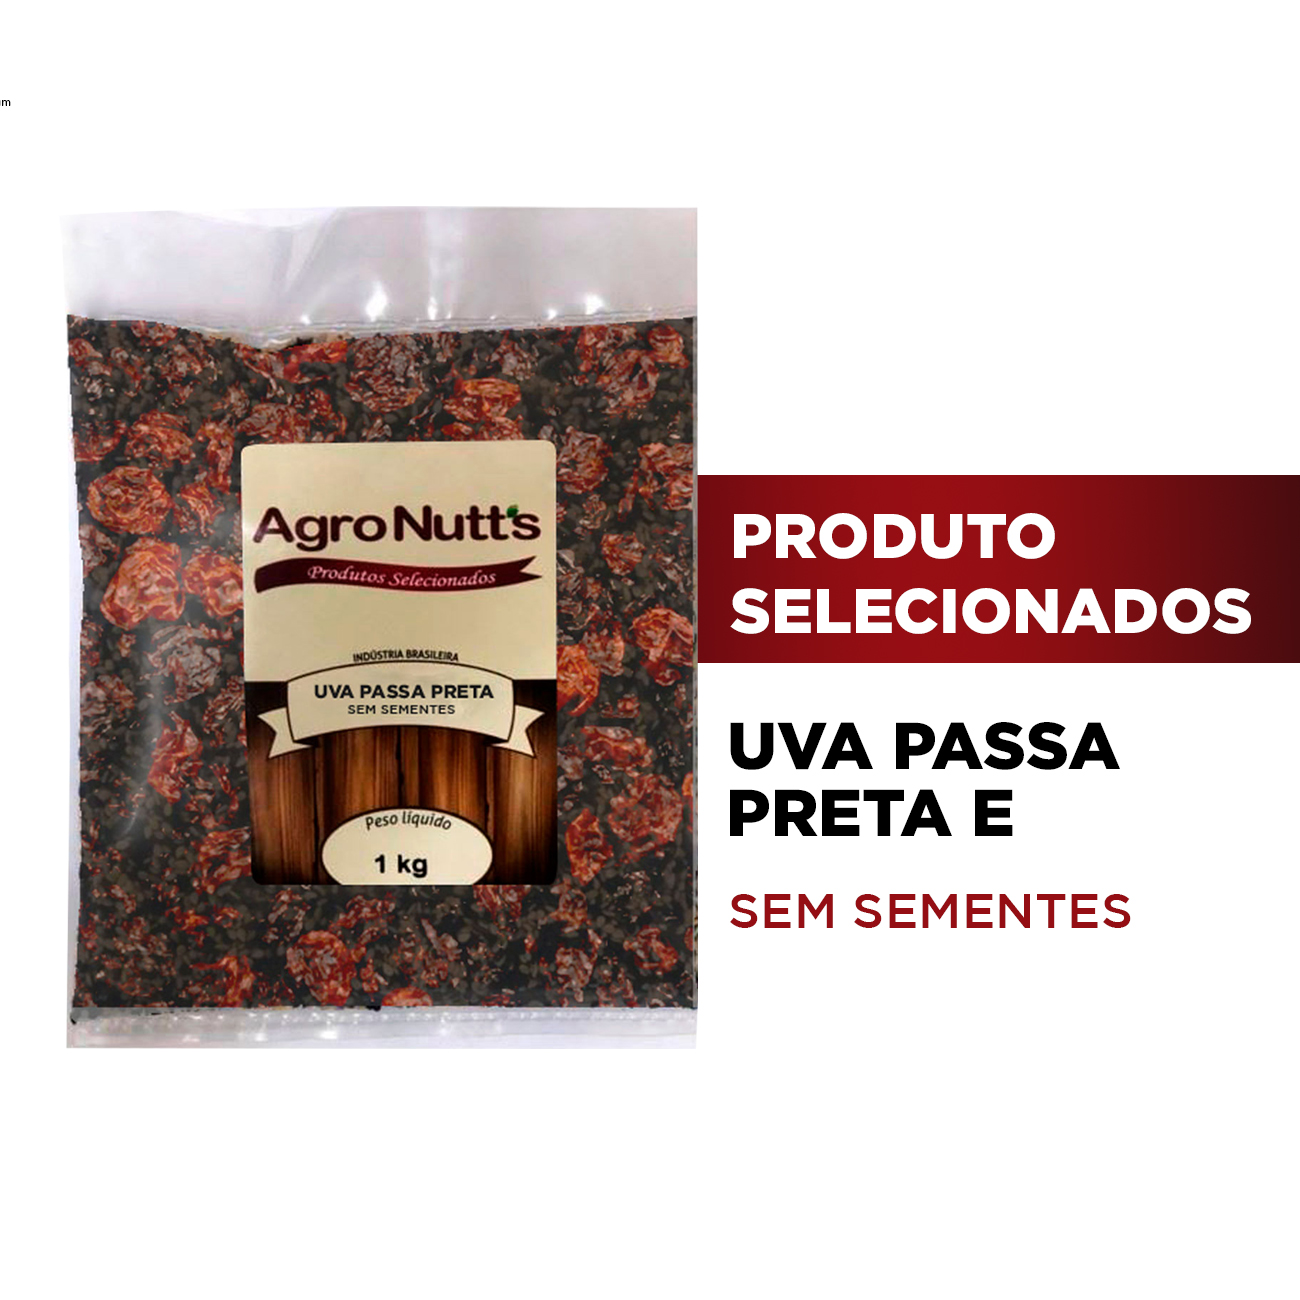 Uva Passa Preta Agronutts Sem Semente Pacote 1kg